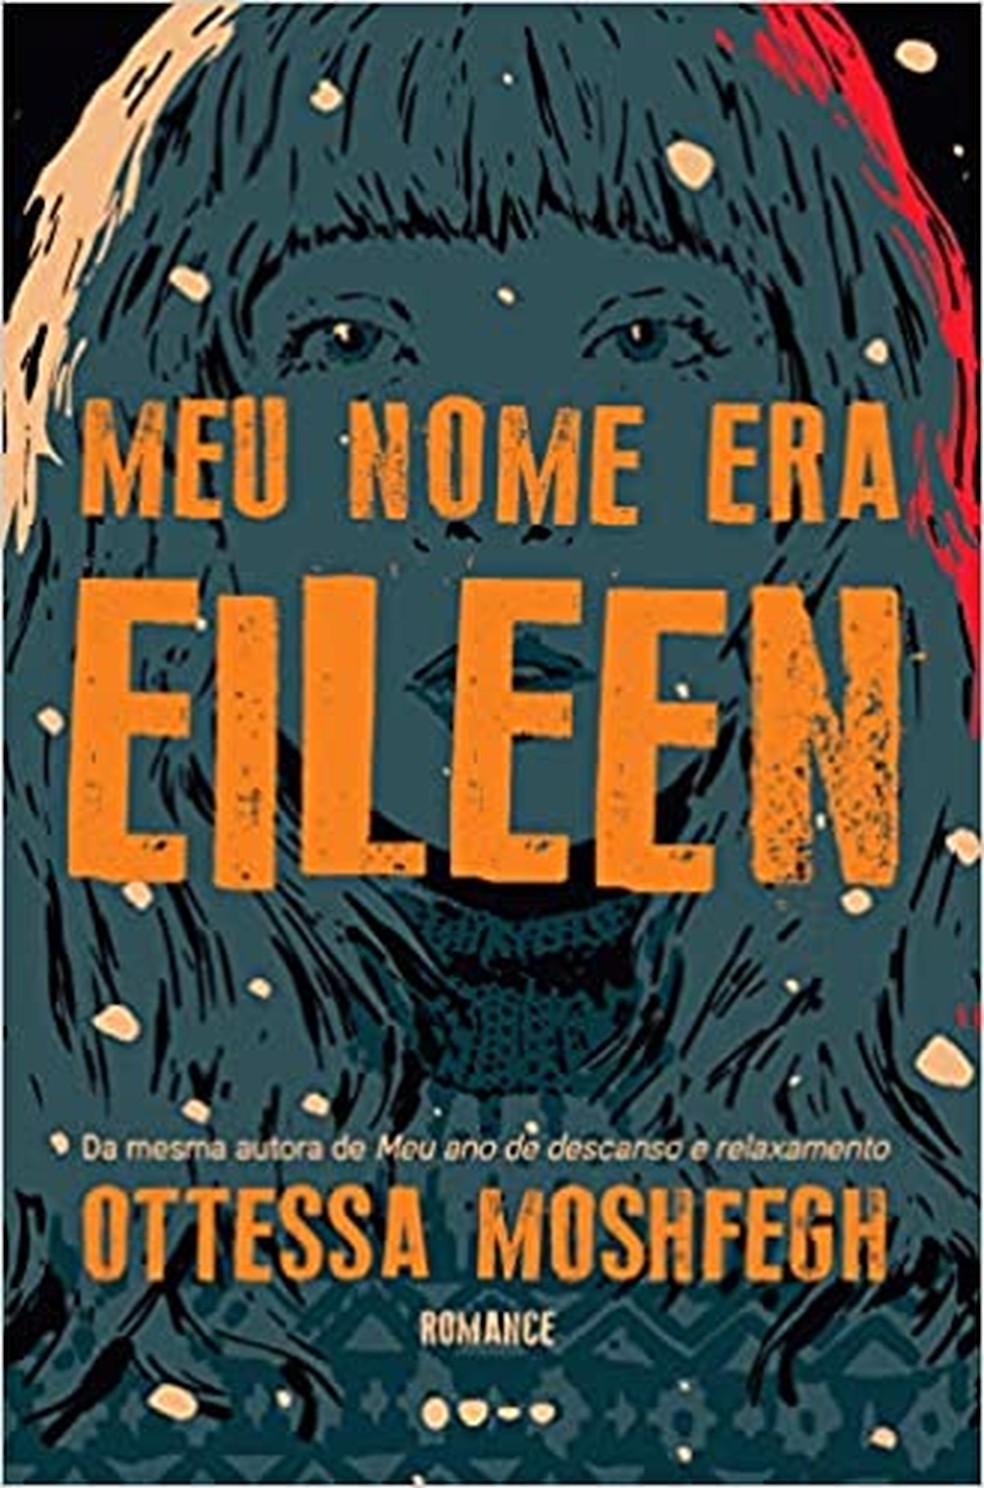 Capa de 'Meu nome era Eileen' — Foto: Divulgação